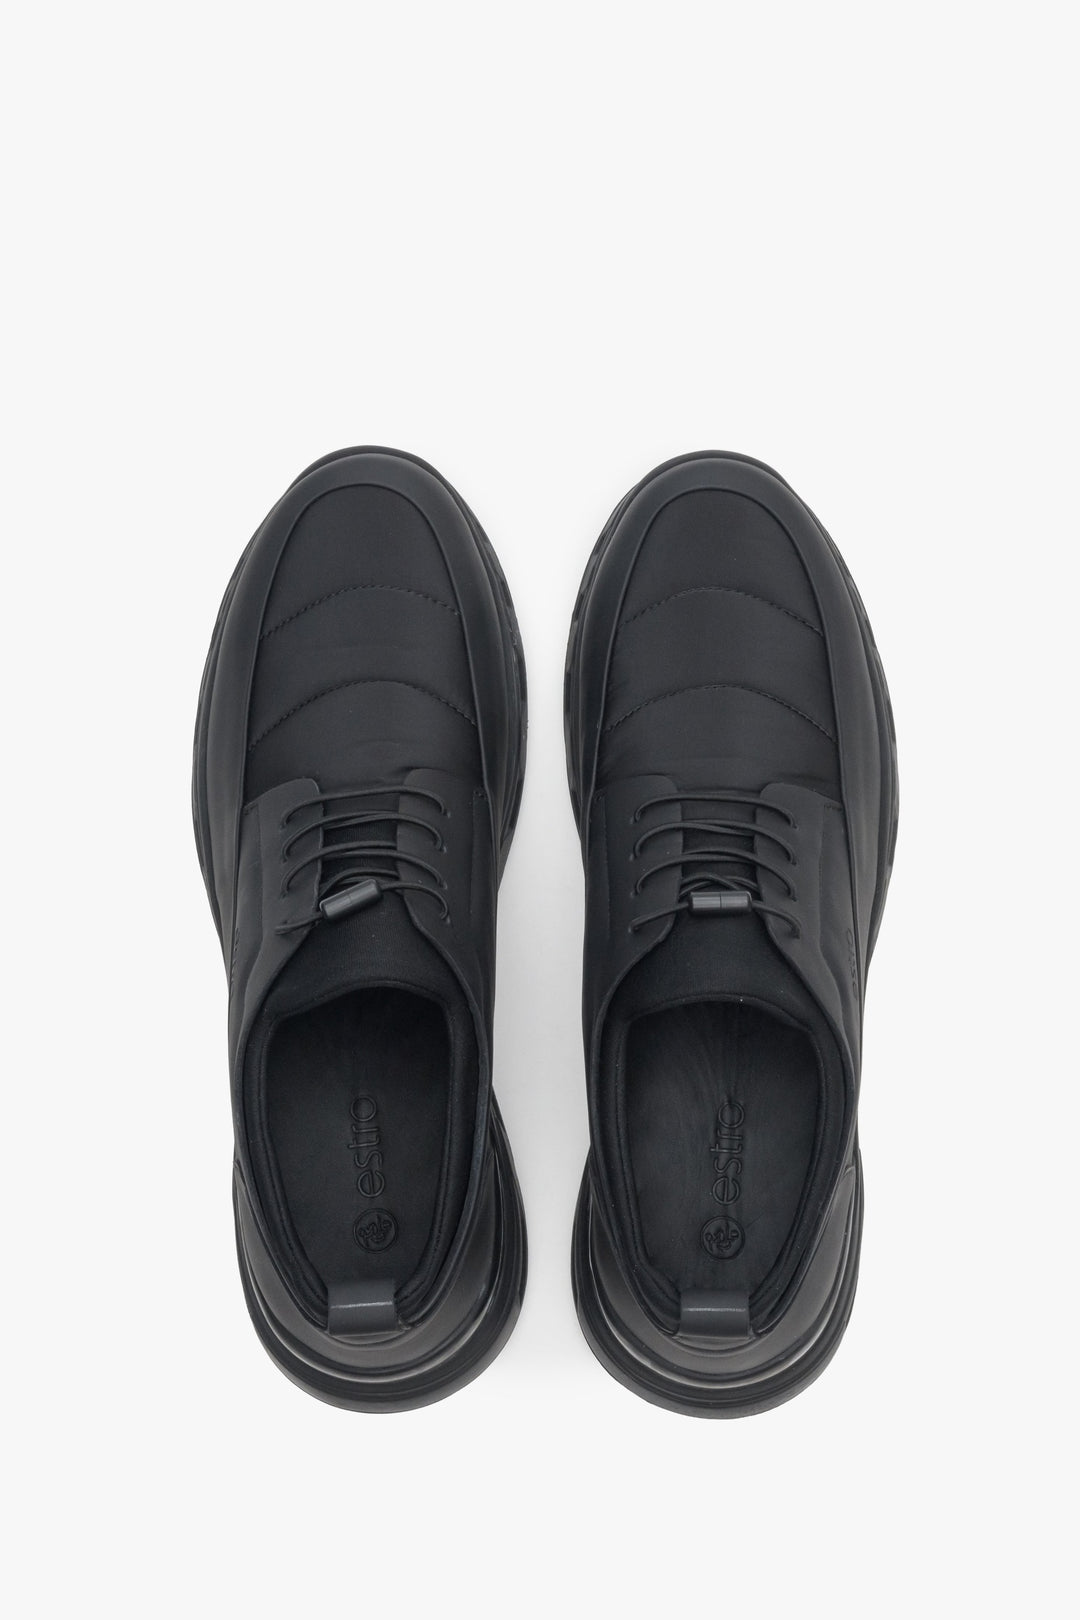 Wygodne, elastyczne sneakersy męskie Estro w kolorze czarnym - prezentacja modelu z góry.